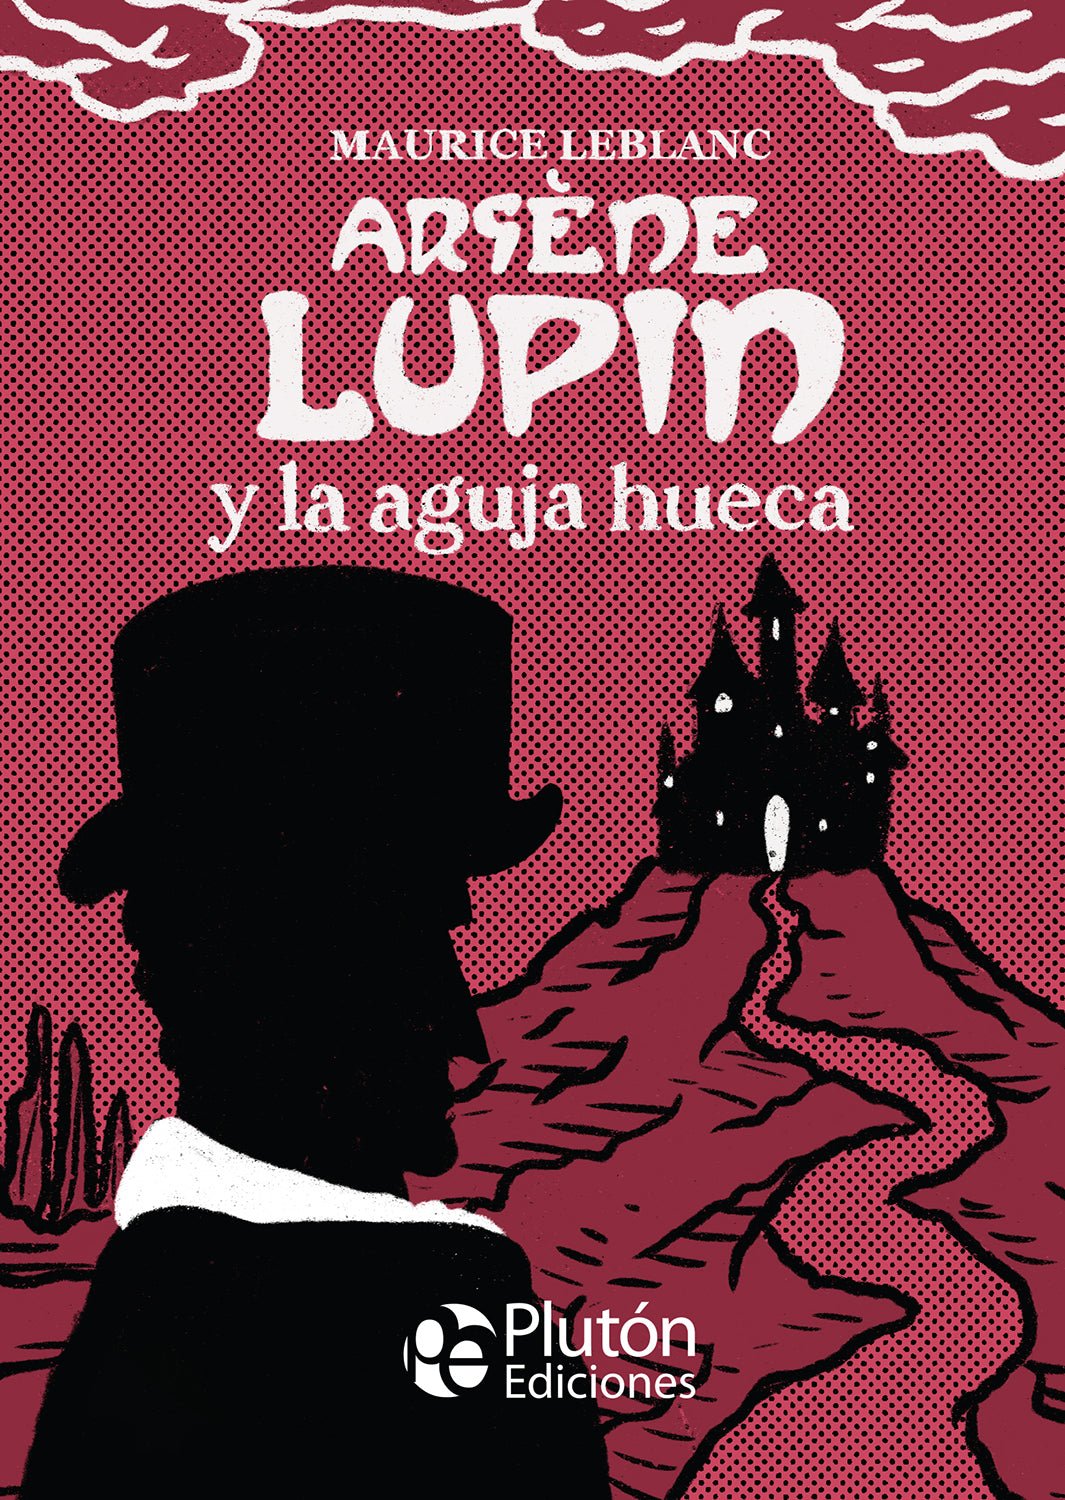 Clásicos Ilustrados Platino Lupin Y La Aguja Hueca